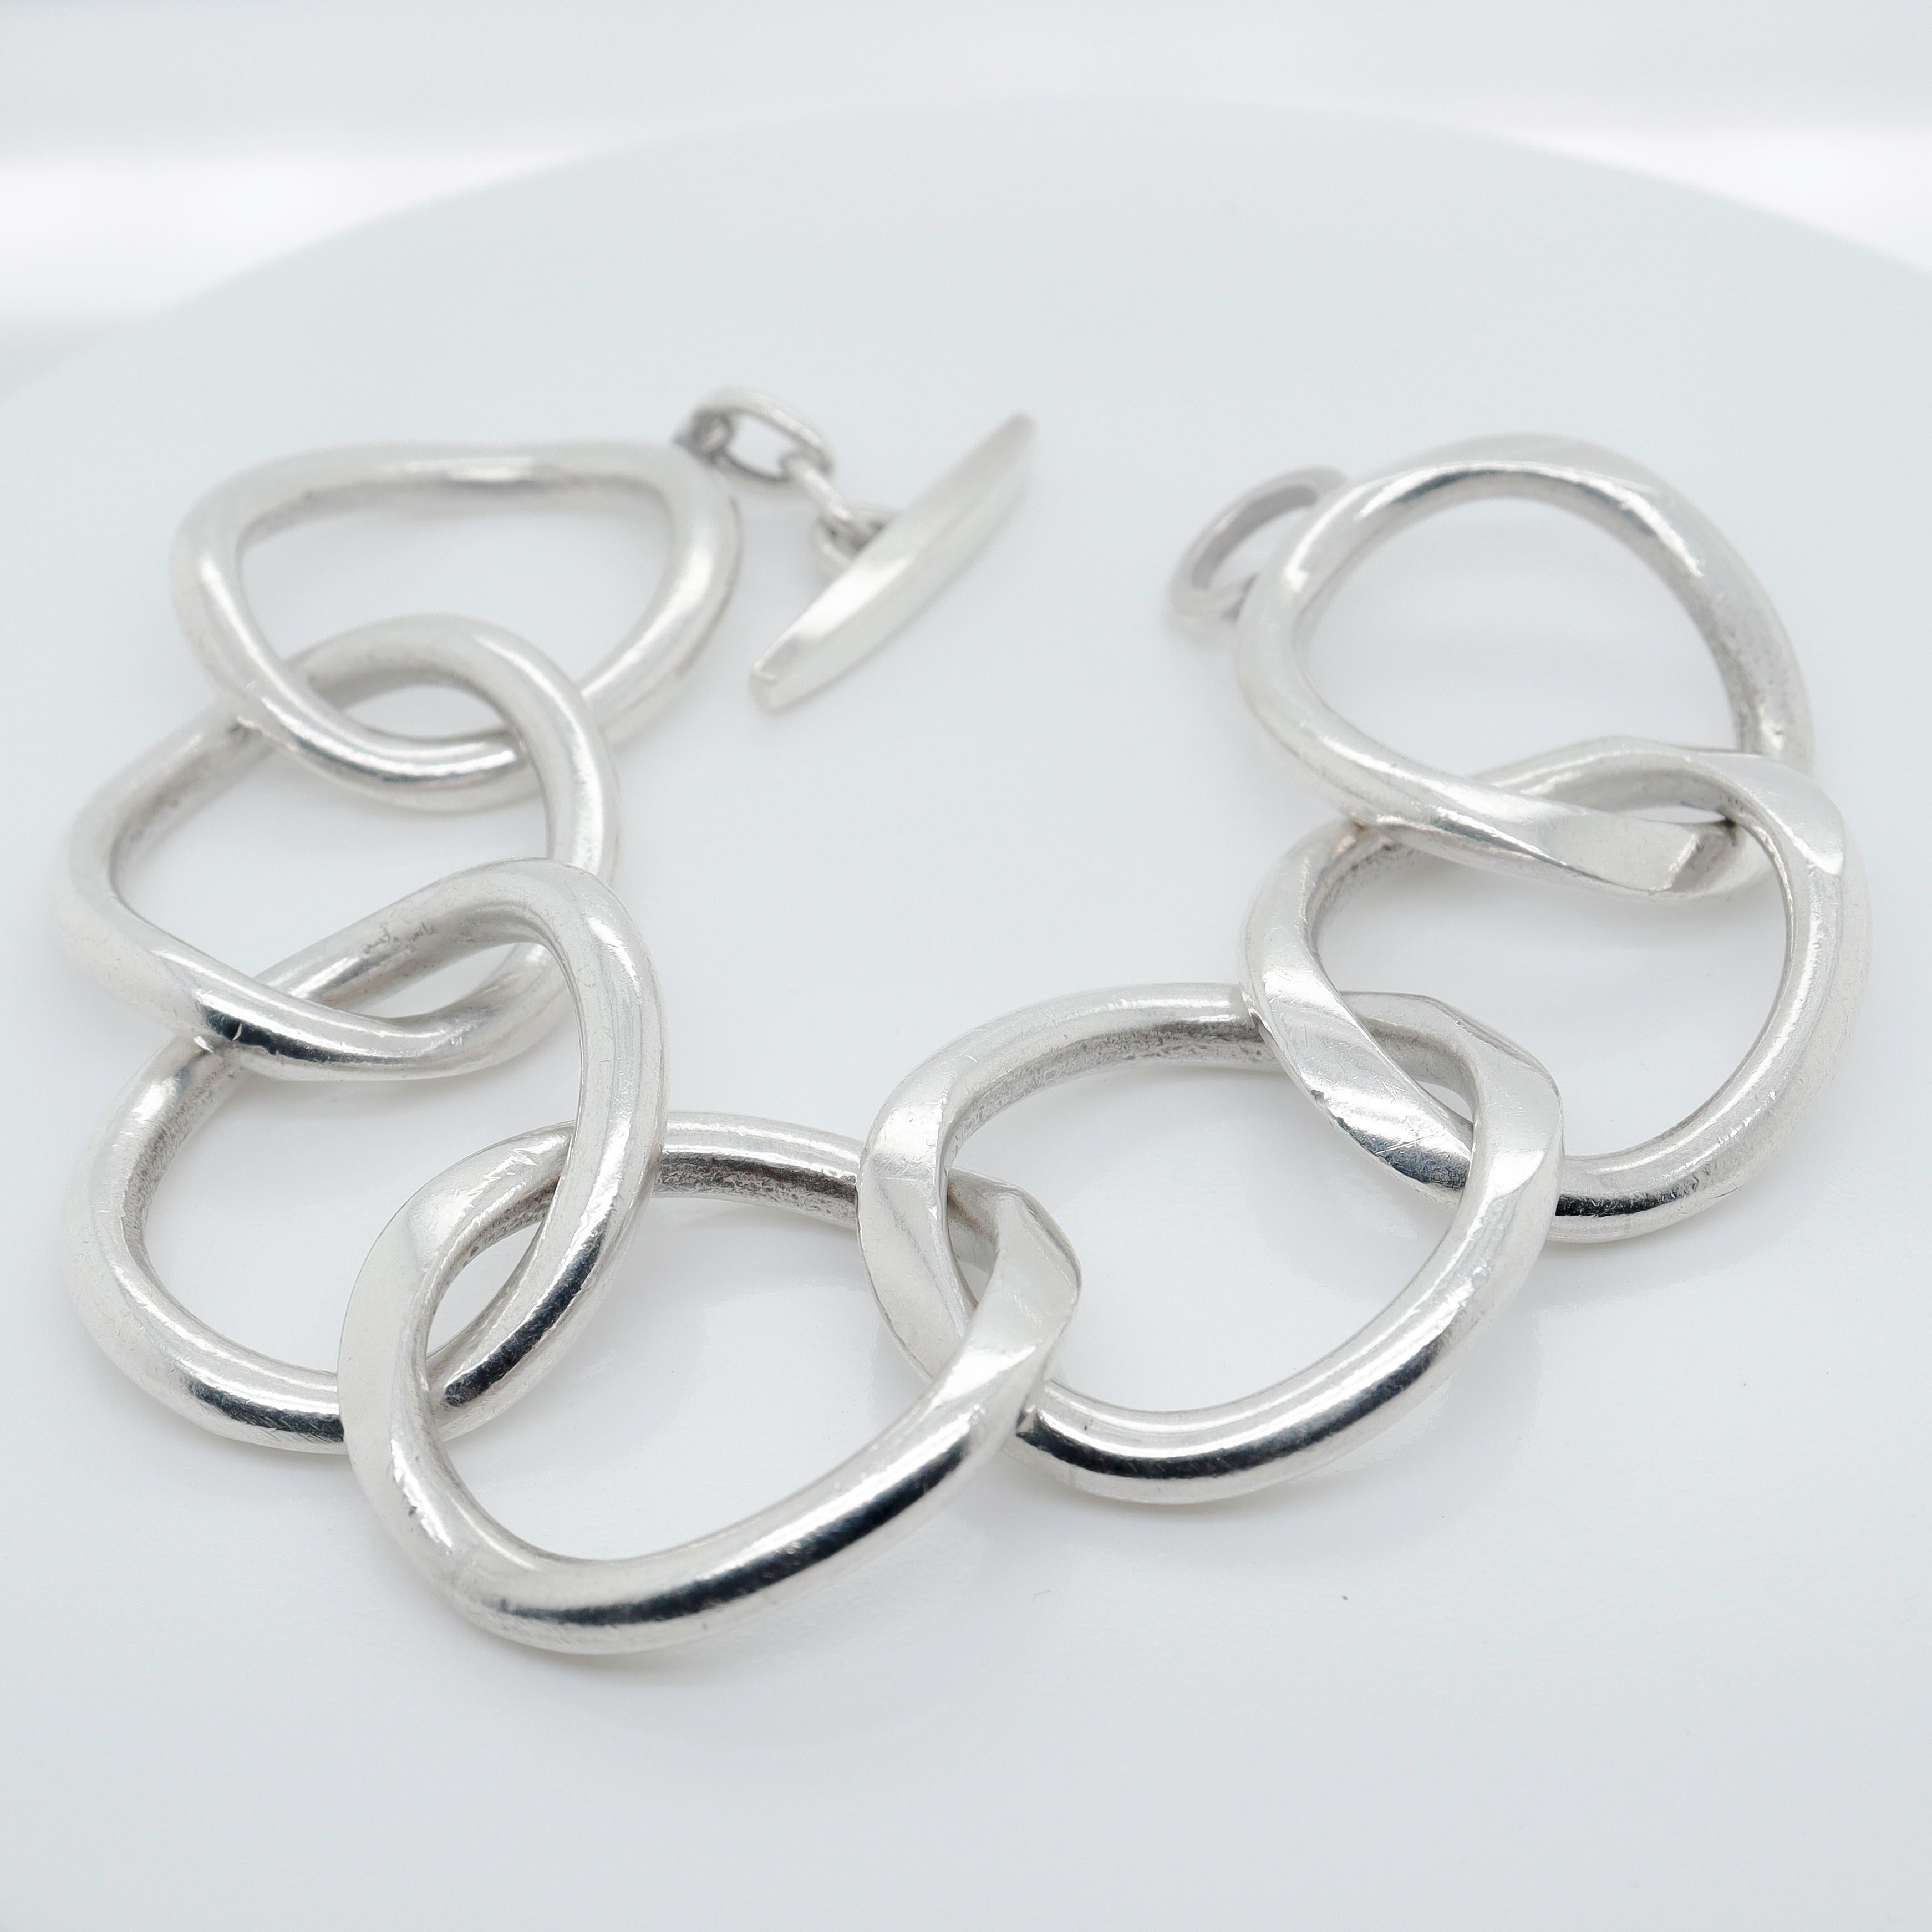 Signed Handmade Danish Modern Sterling Silver Large Link Bracelet by Randers For Sale 7